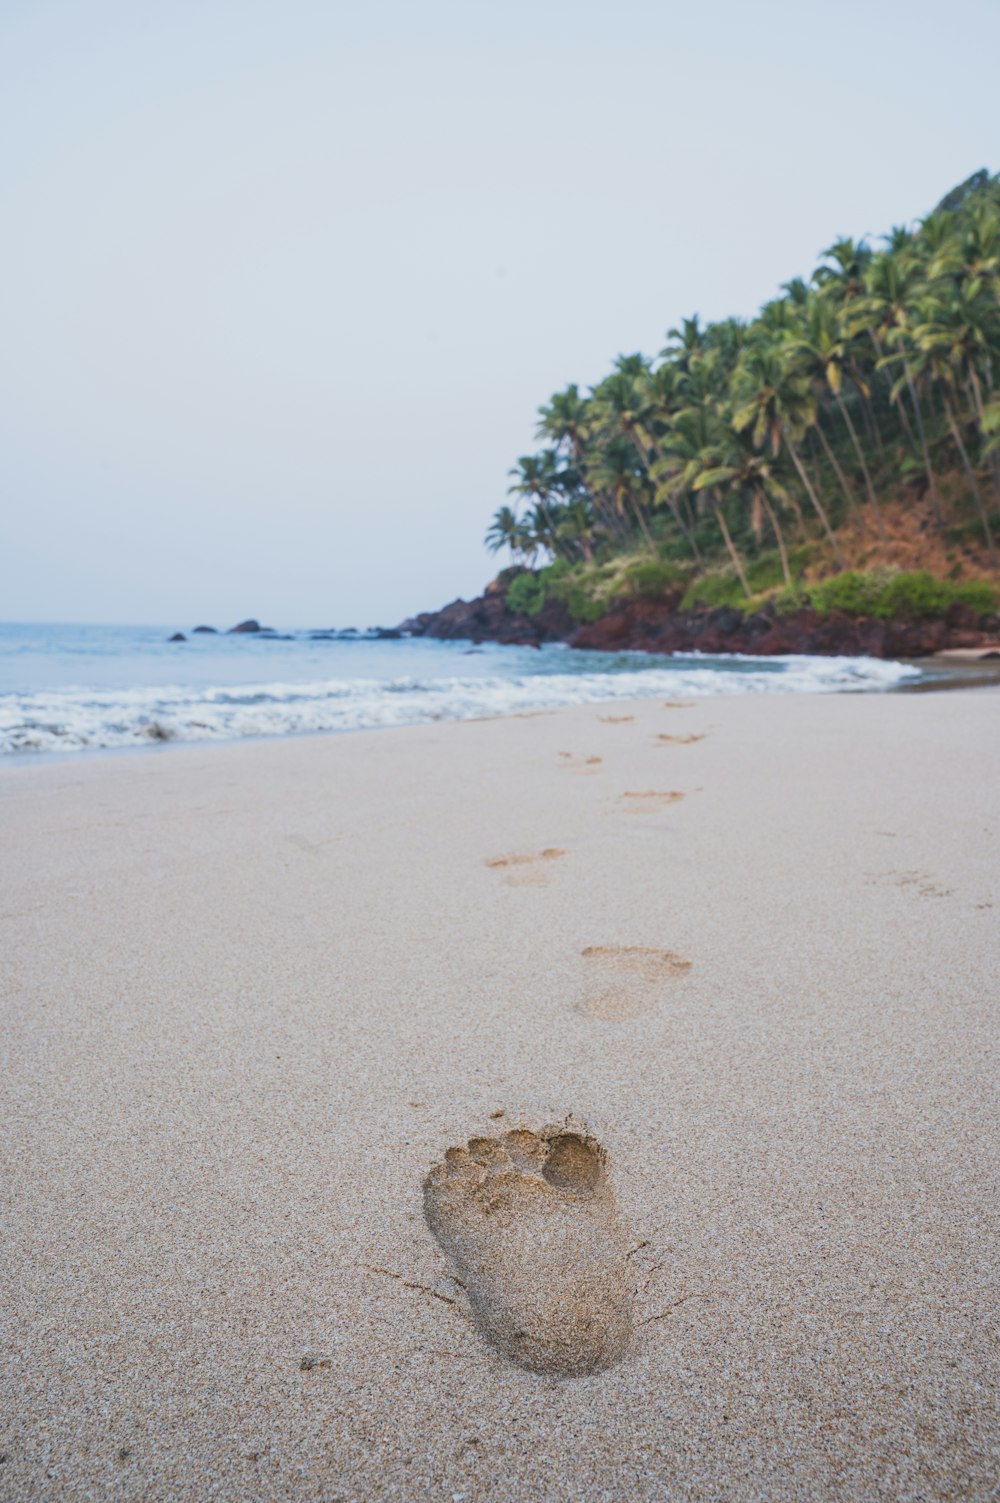 Le impronte del piede di una persona nella sabbia su una spiaggia